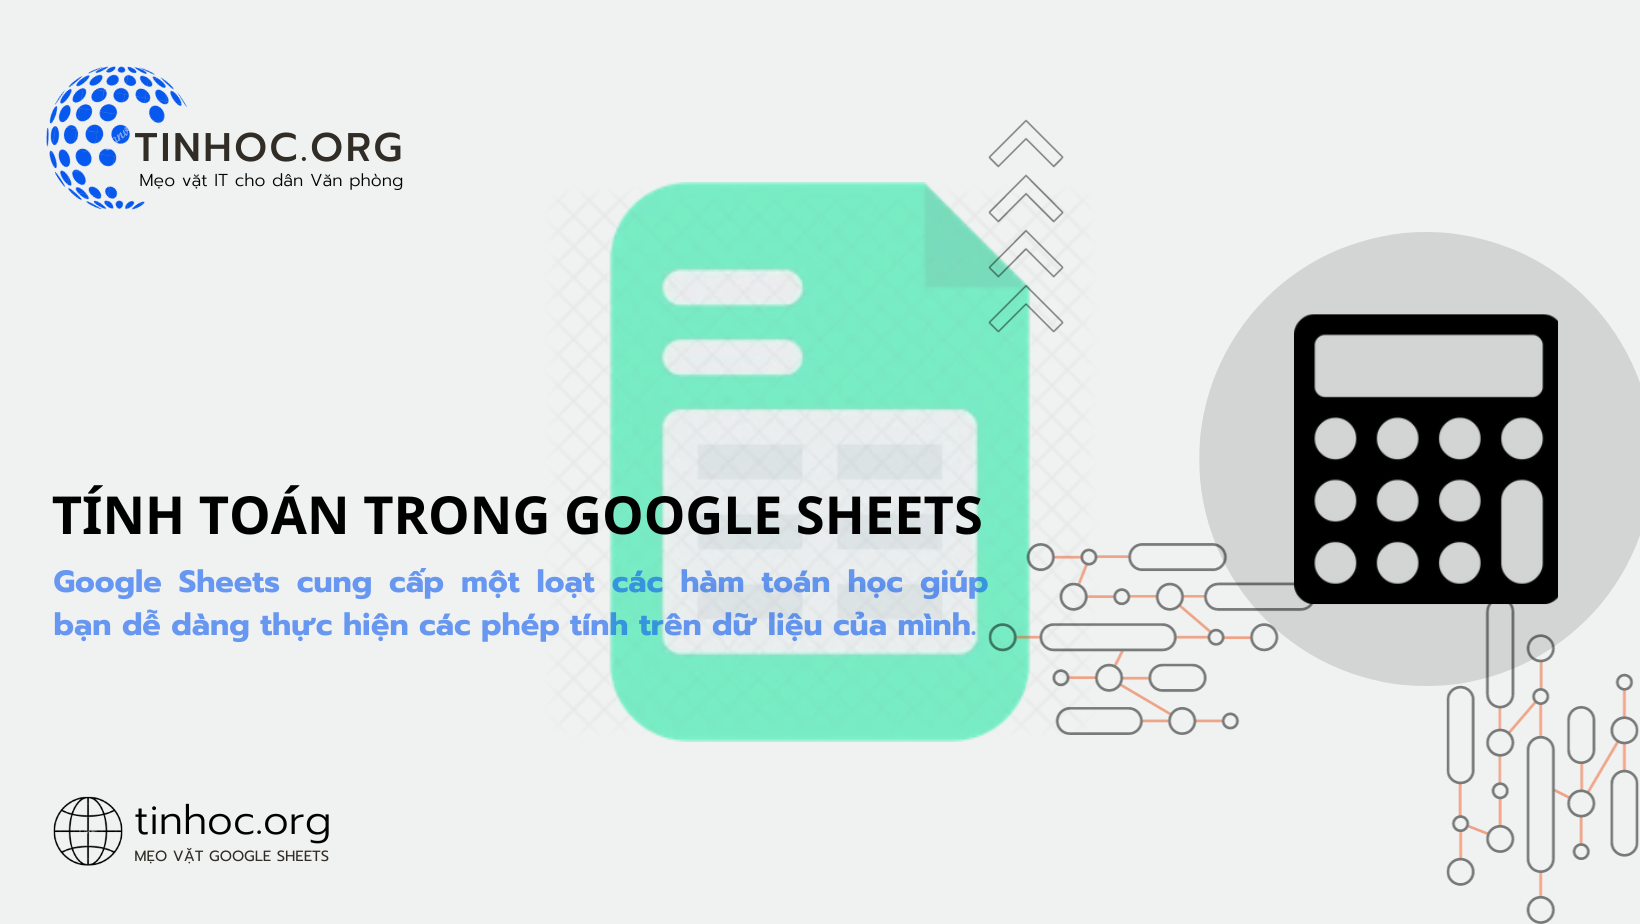 Tính toán trong Google Sheets